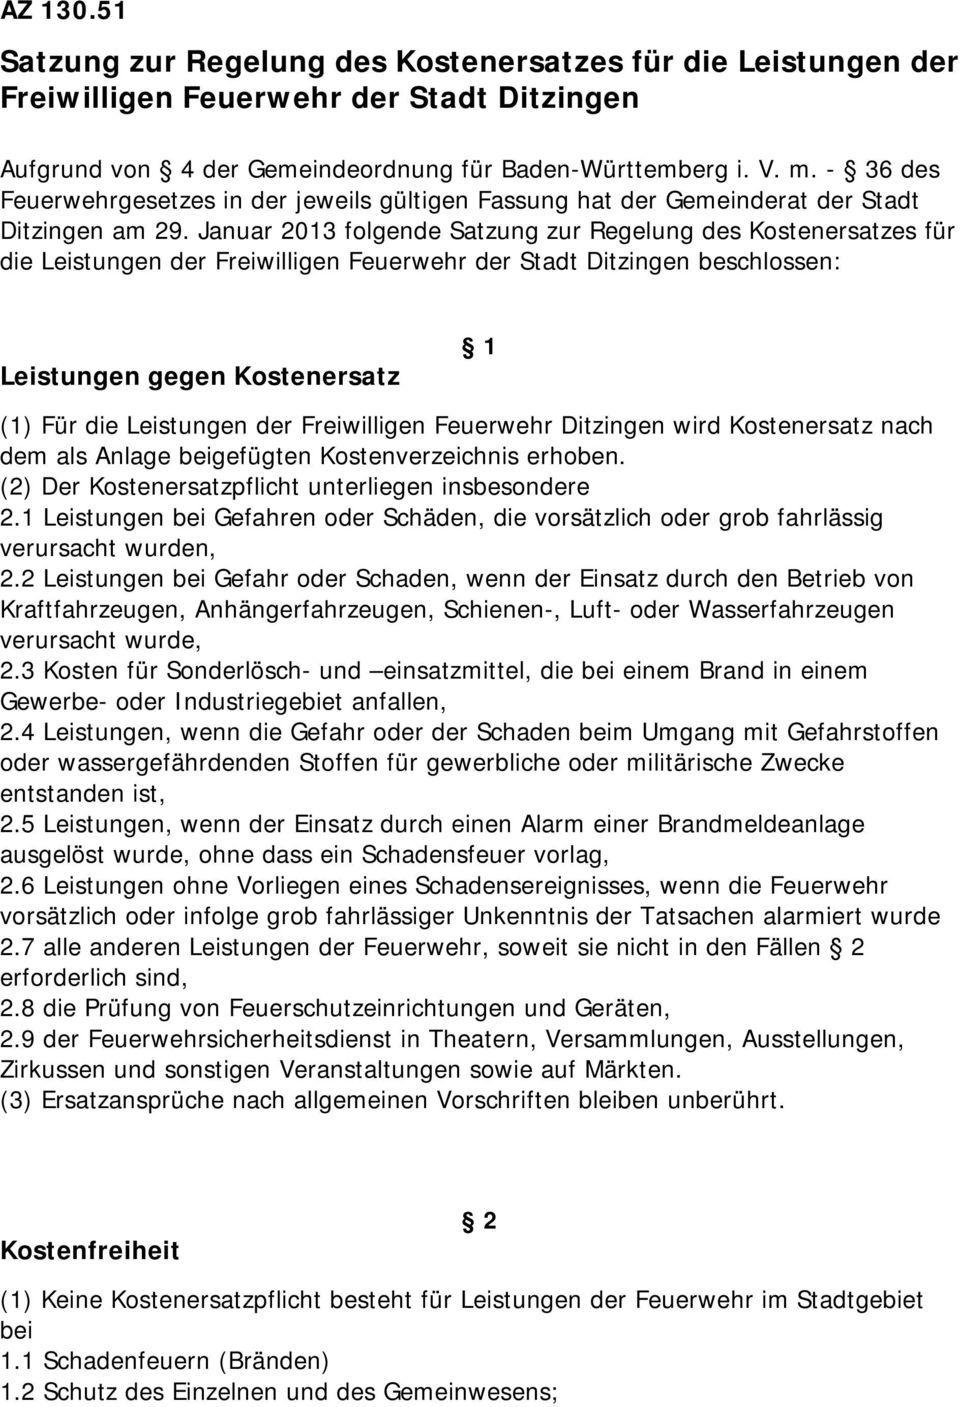 Januar 2013 folgende Satzung zur Regelung des Kostenersatzes für die Leistungen der Freiwilligen Feuerwehr der Stadt Ditzingen beschlossen: Leistungen gegen Kostenersatz 1 (1) Für die Leistungen der